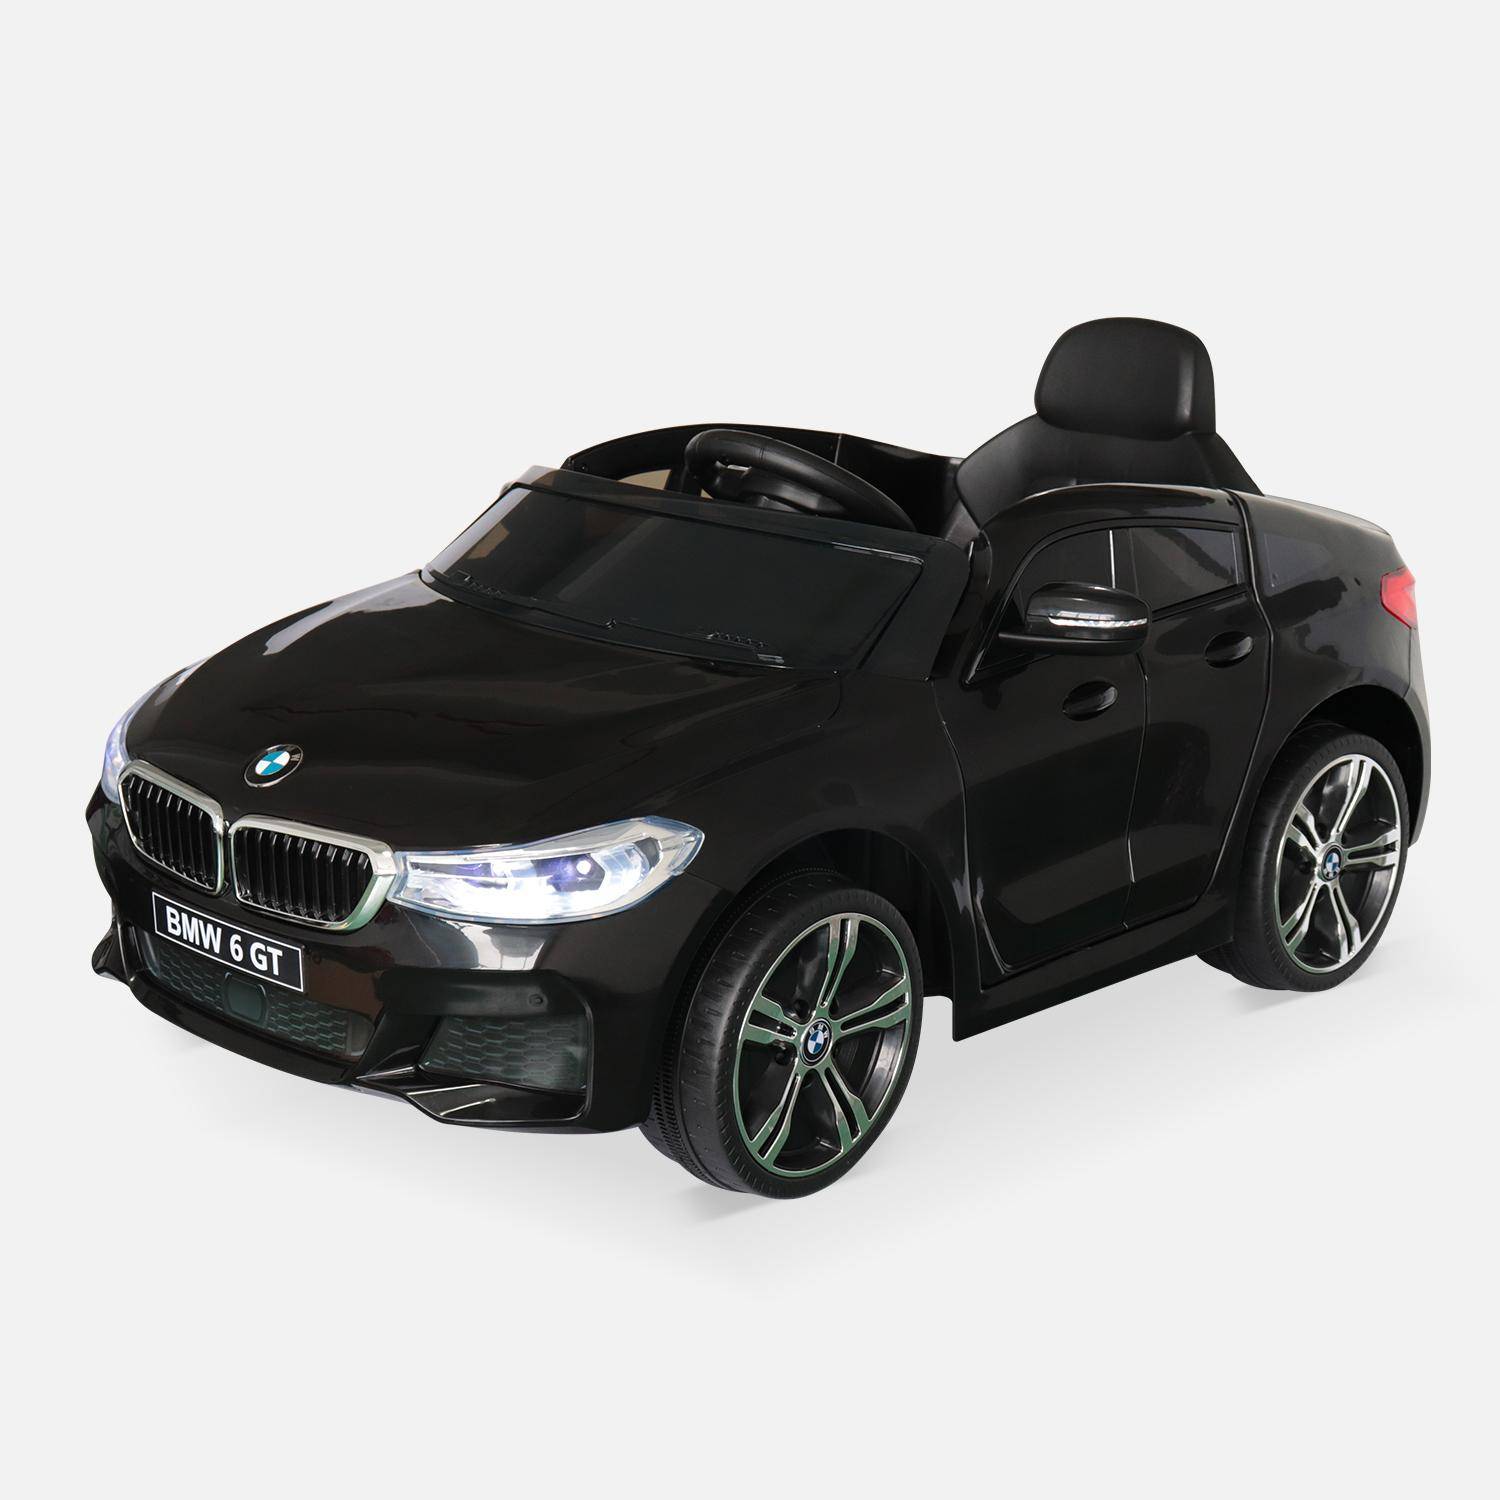 BMW Serie 6 GT Gran Turismo preto,carro eléctrico infantil 12V 4 Ah, 1 lugar , con autorradio y controle remoto. Photo2